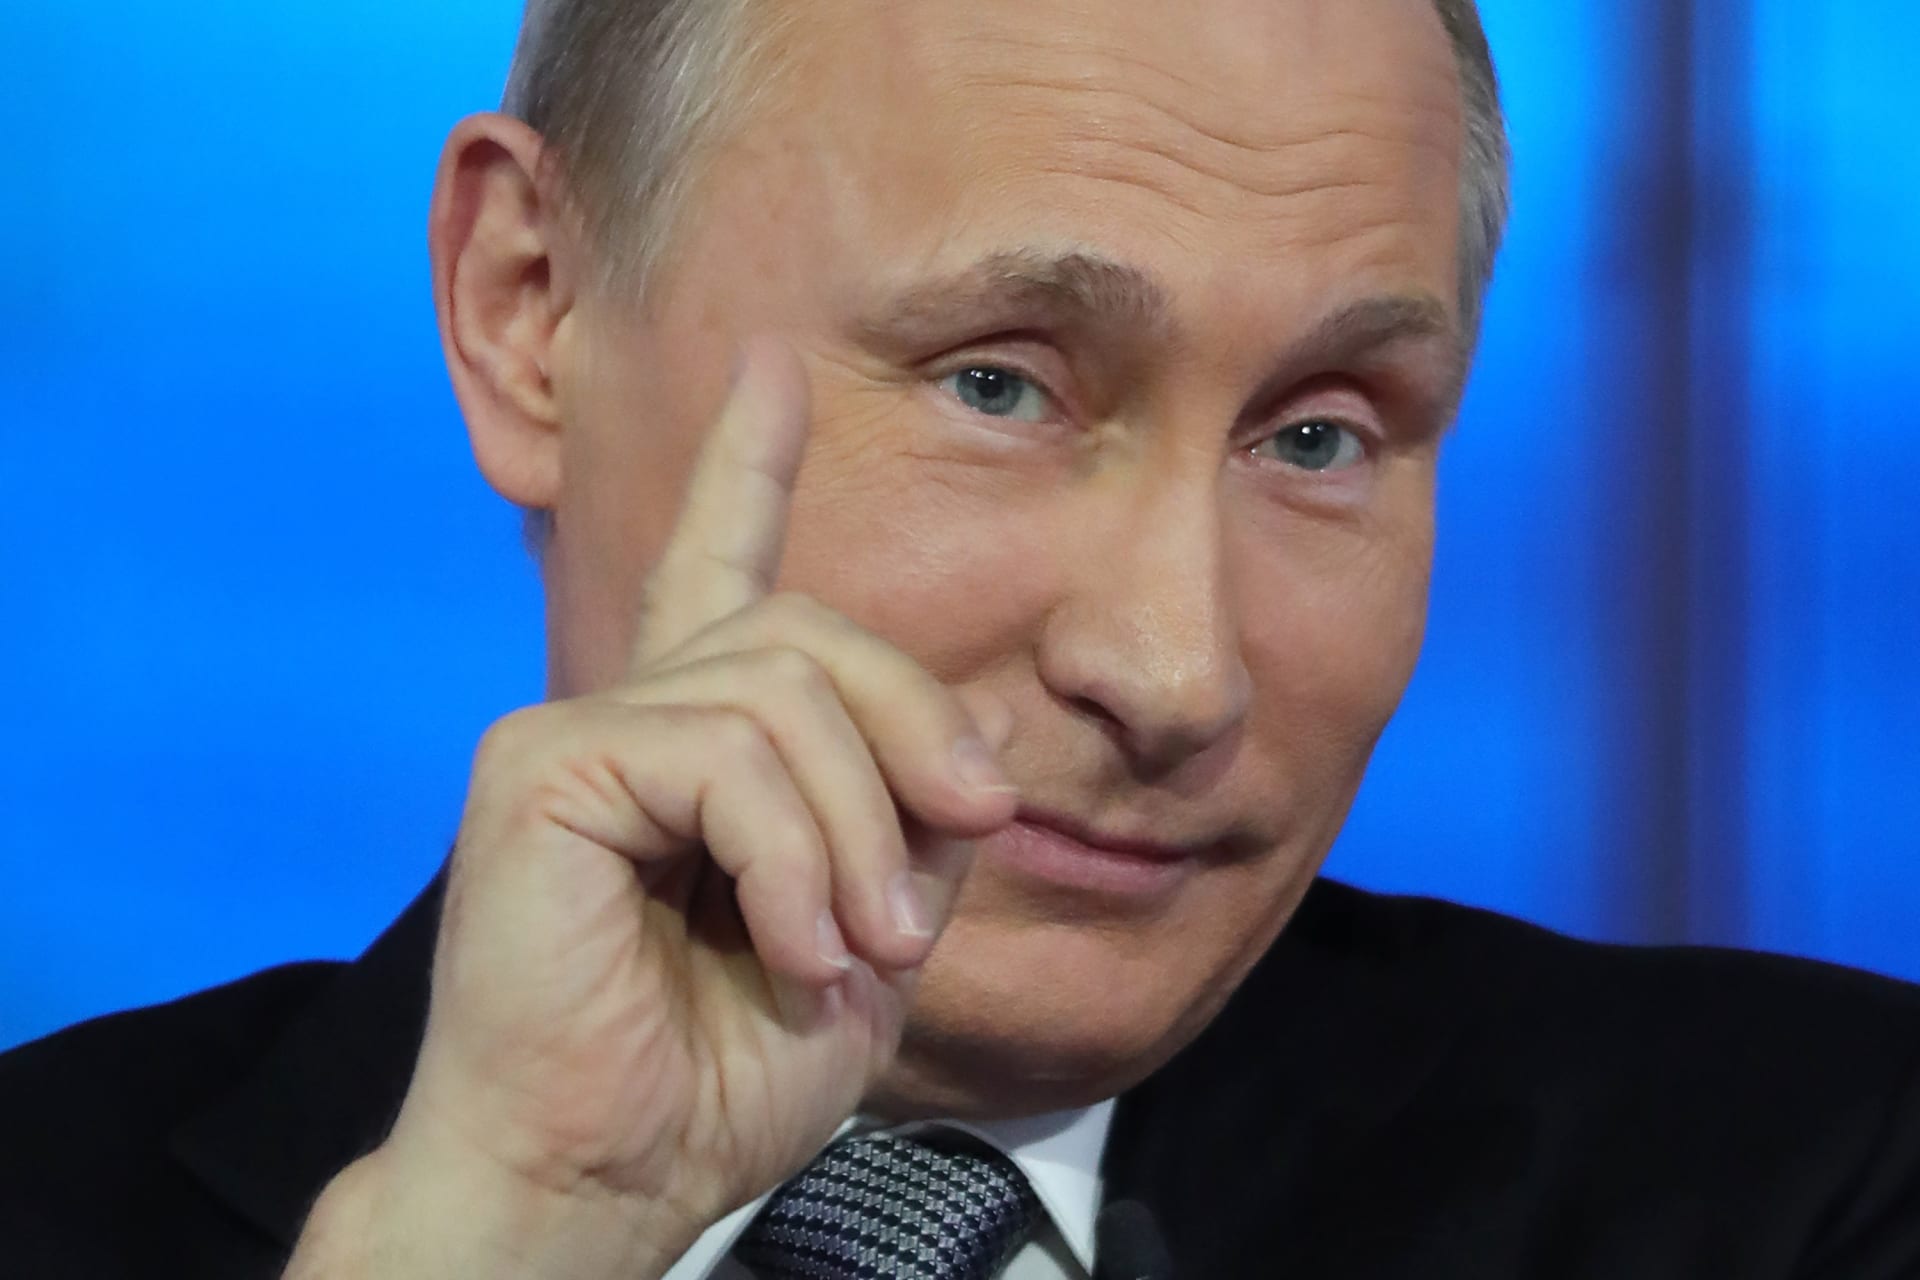 بوتين يتهم أمريكا بأنها وراء وثائق بنما سعيا من واشنطن لزعزعة استقرار روسيا